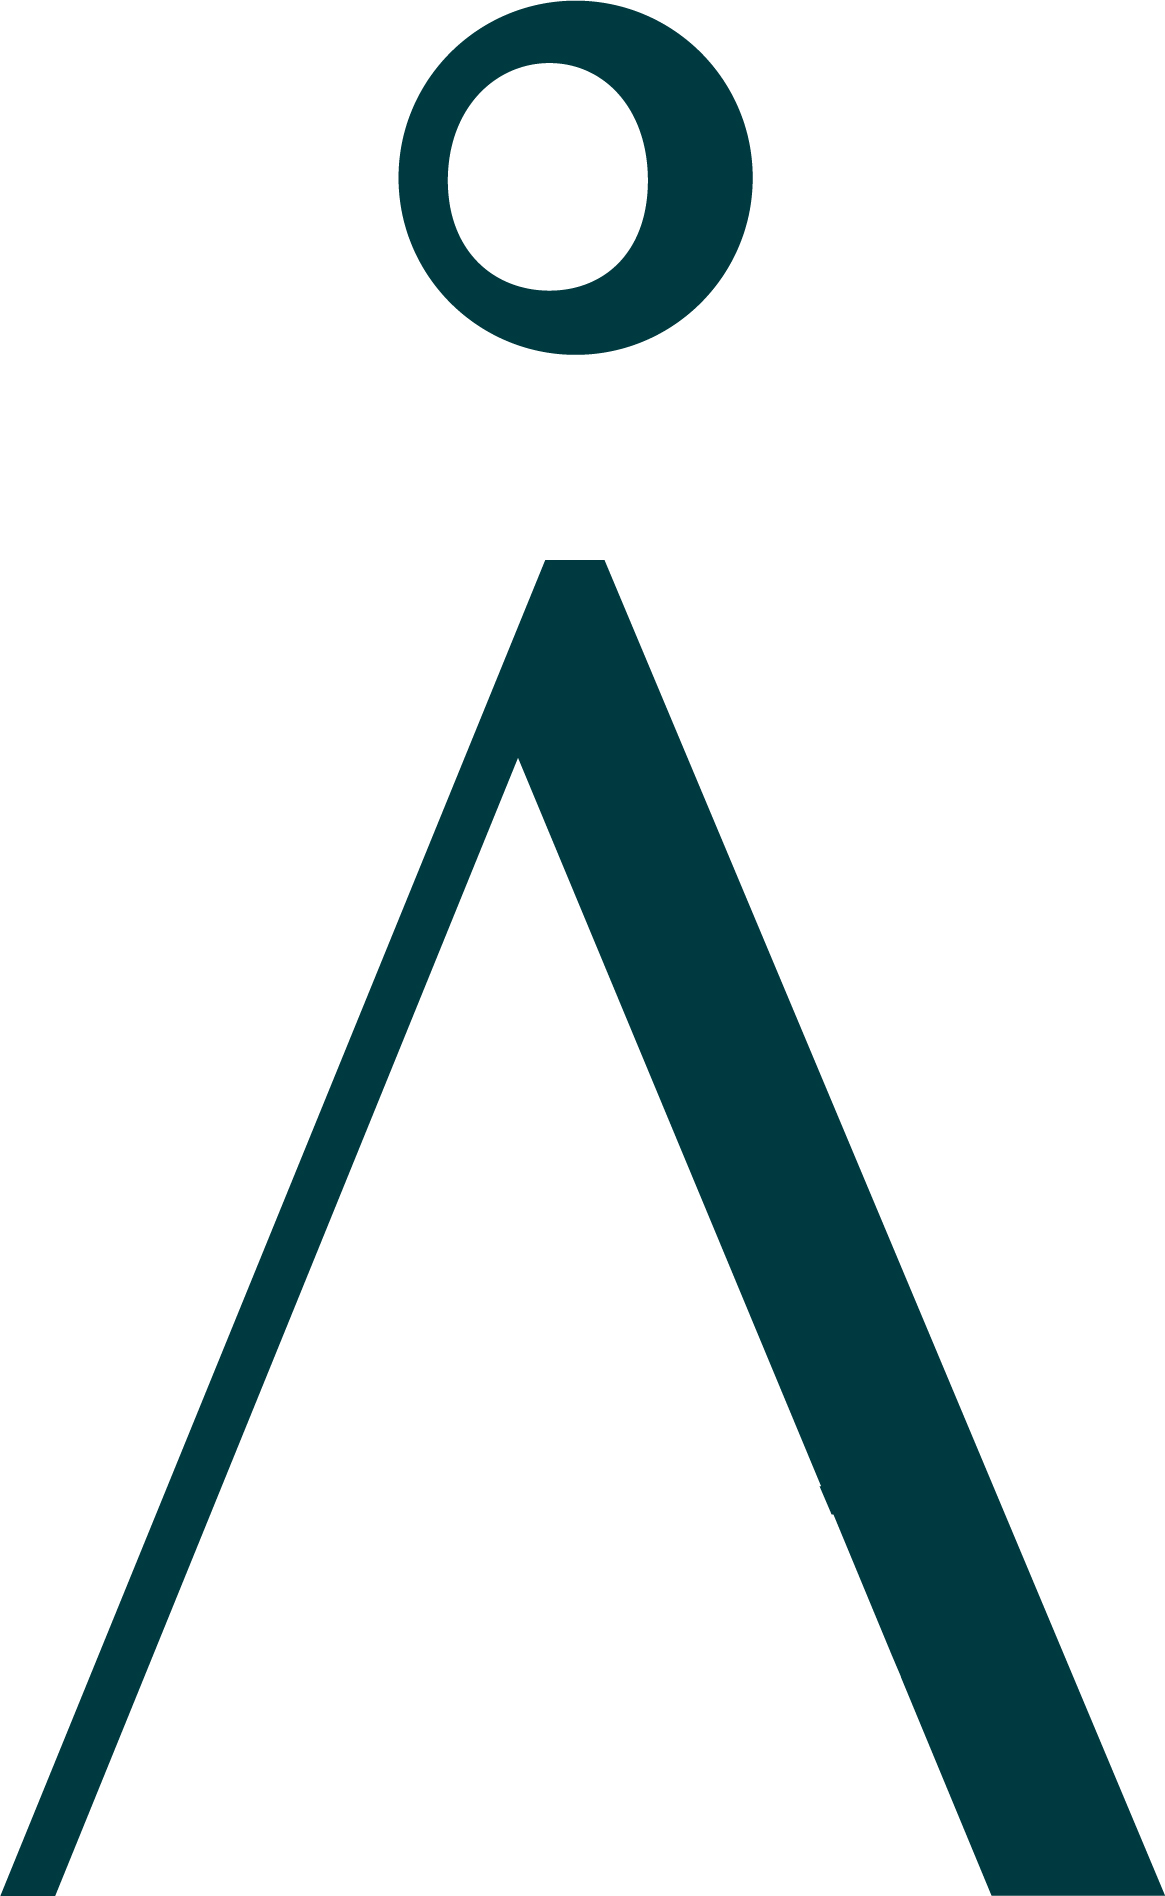 The Aspen Logo